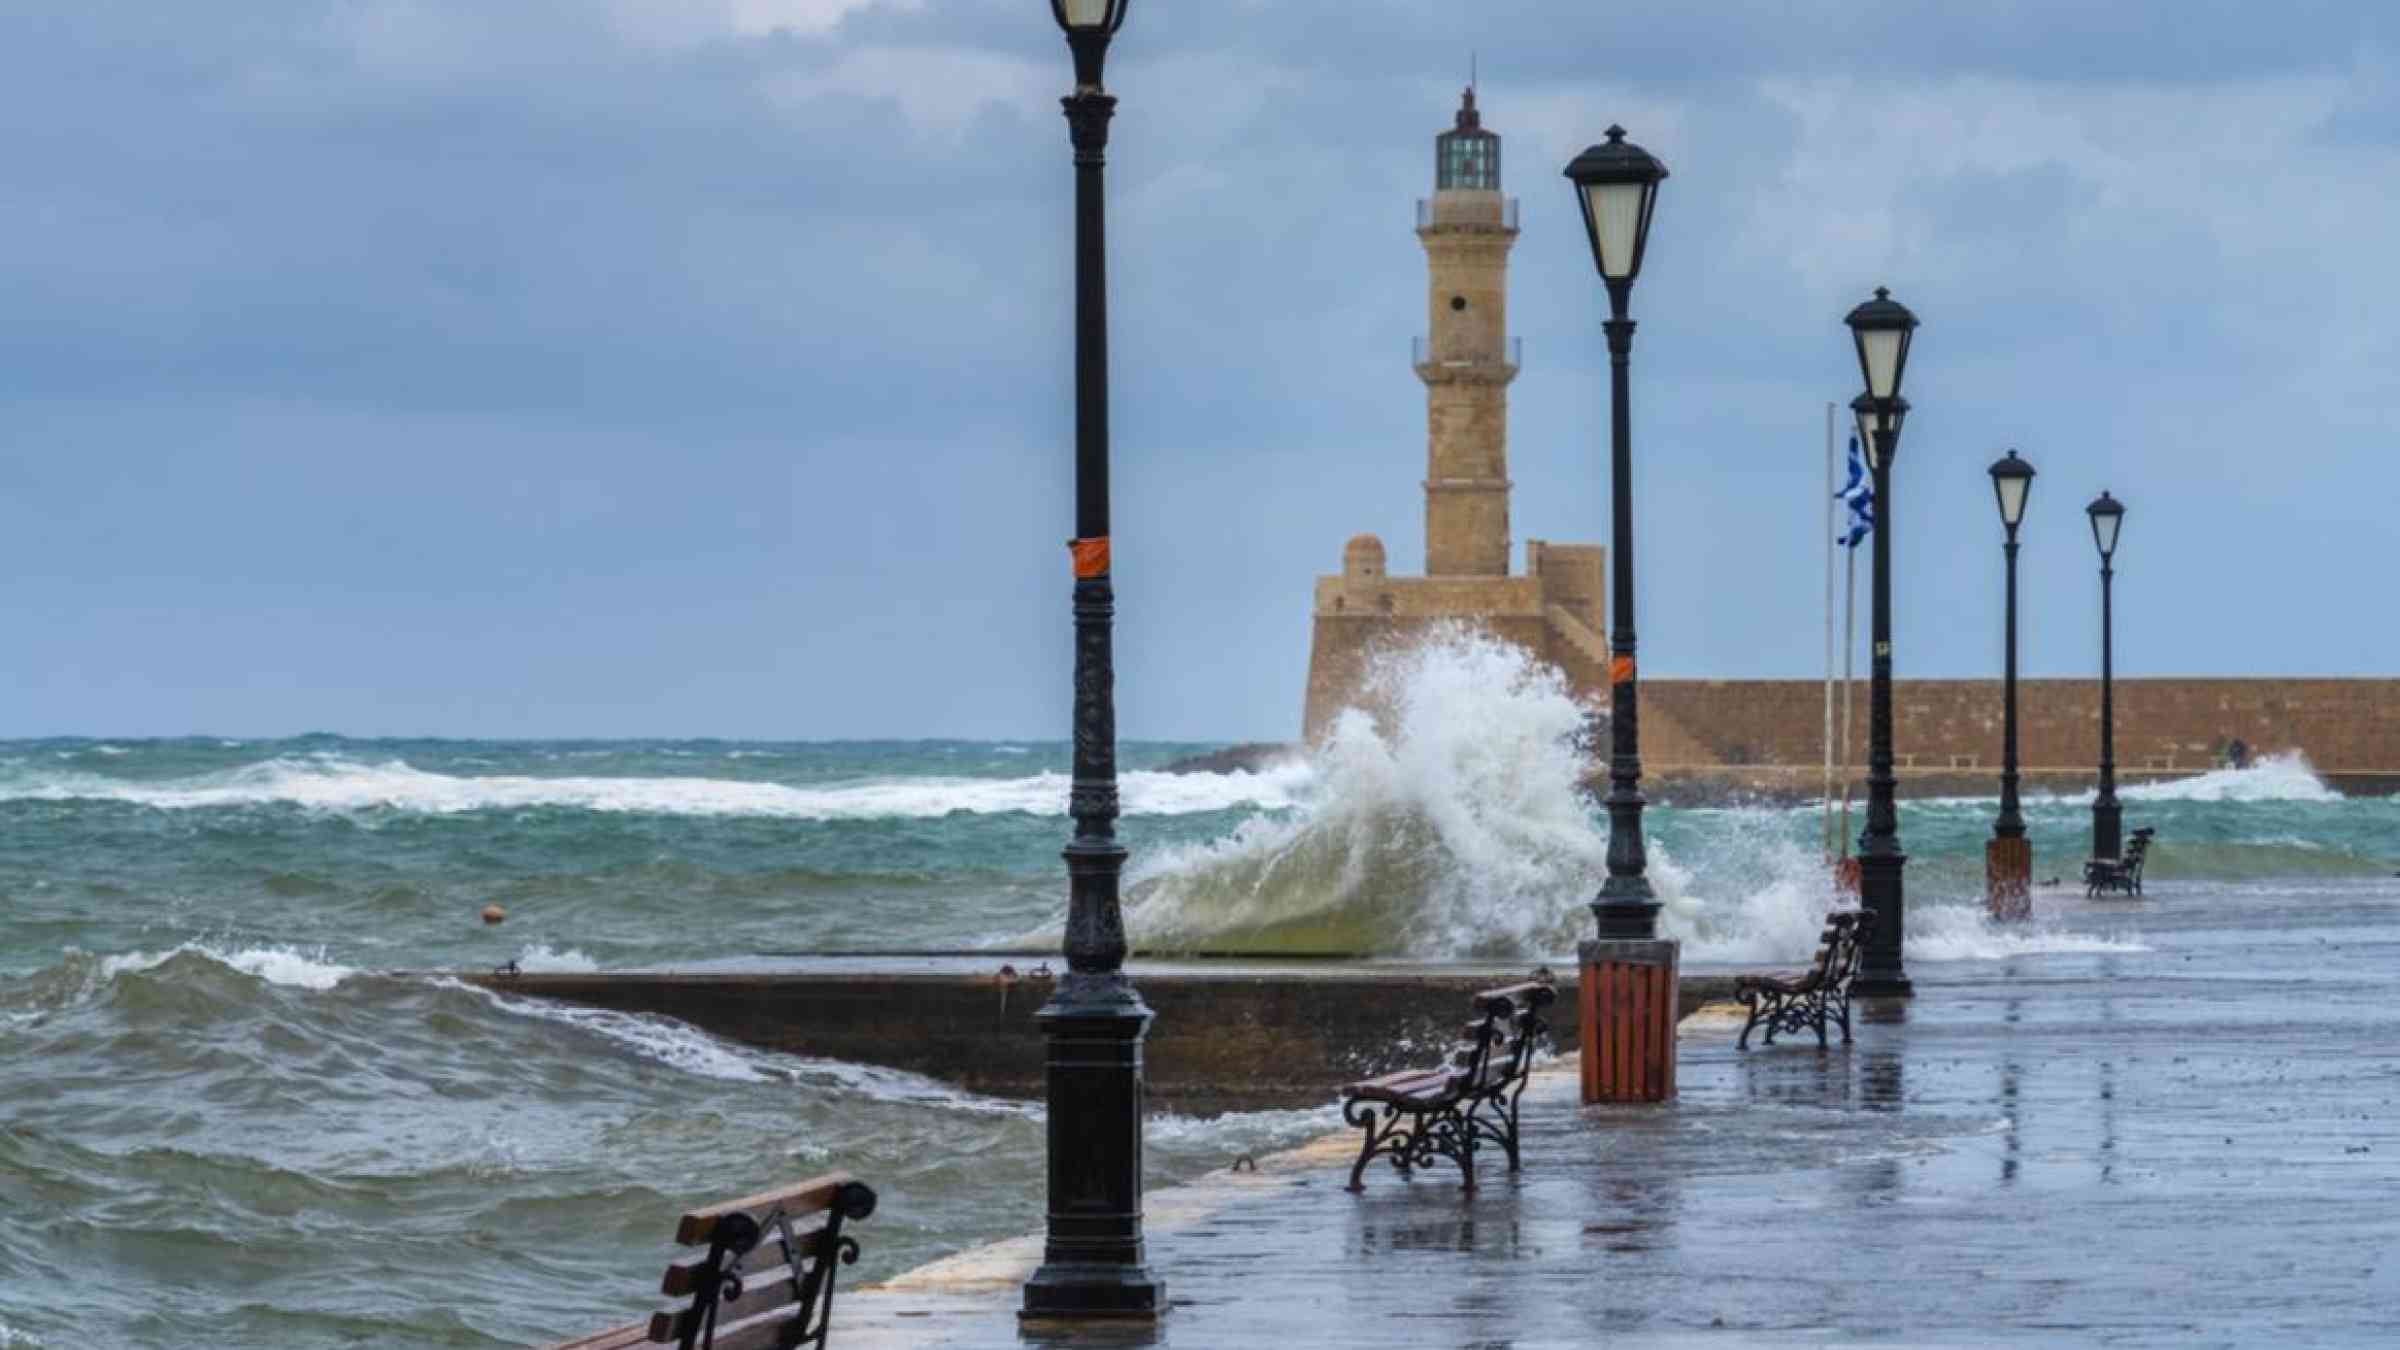 Storm surge in Chania, Greece. LouieLea/Shutterstock